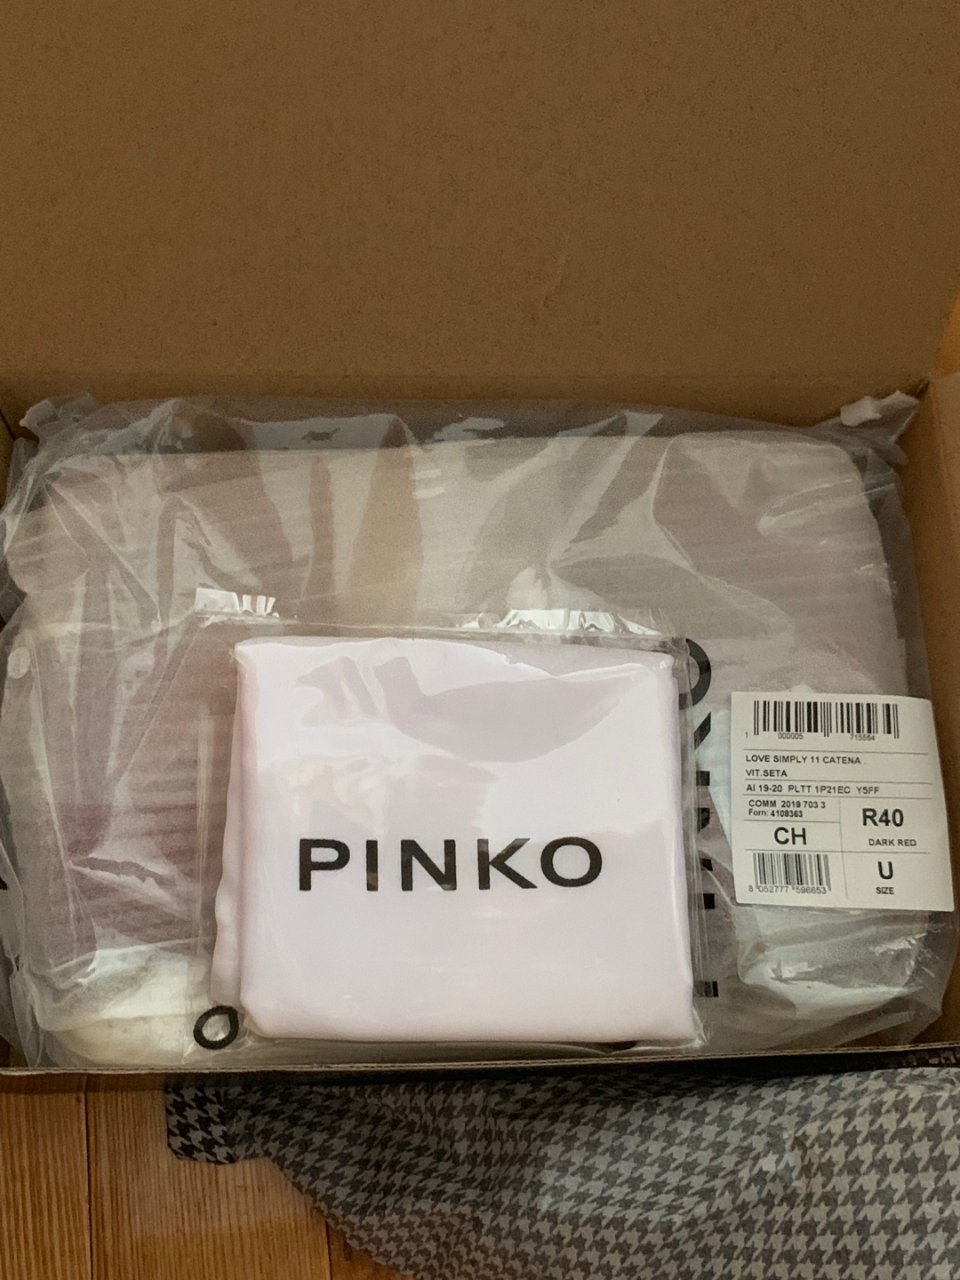 Pinko,Pinko